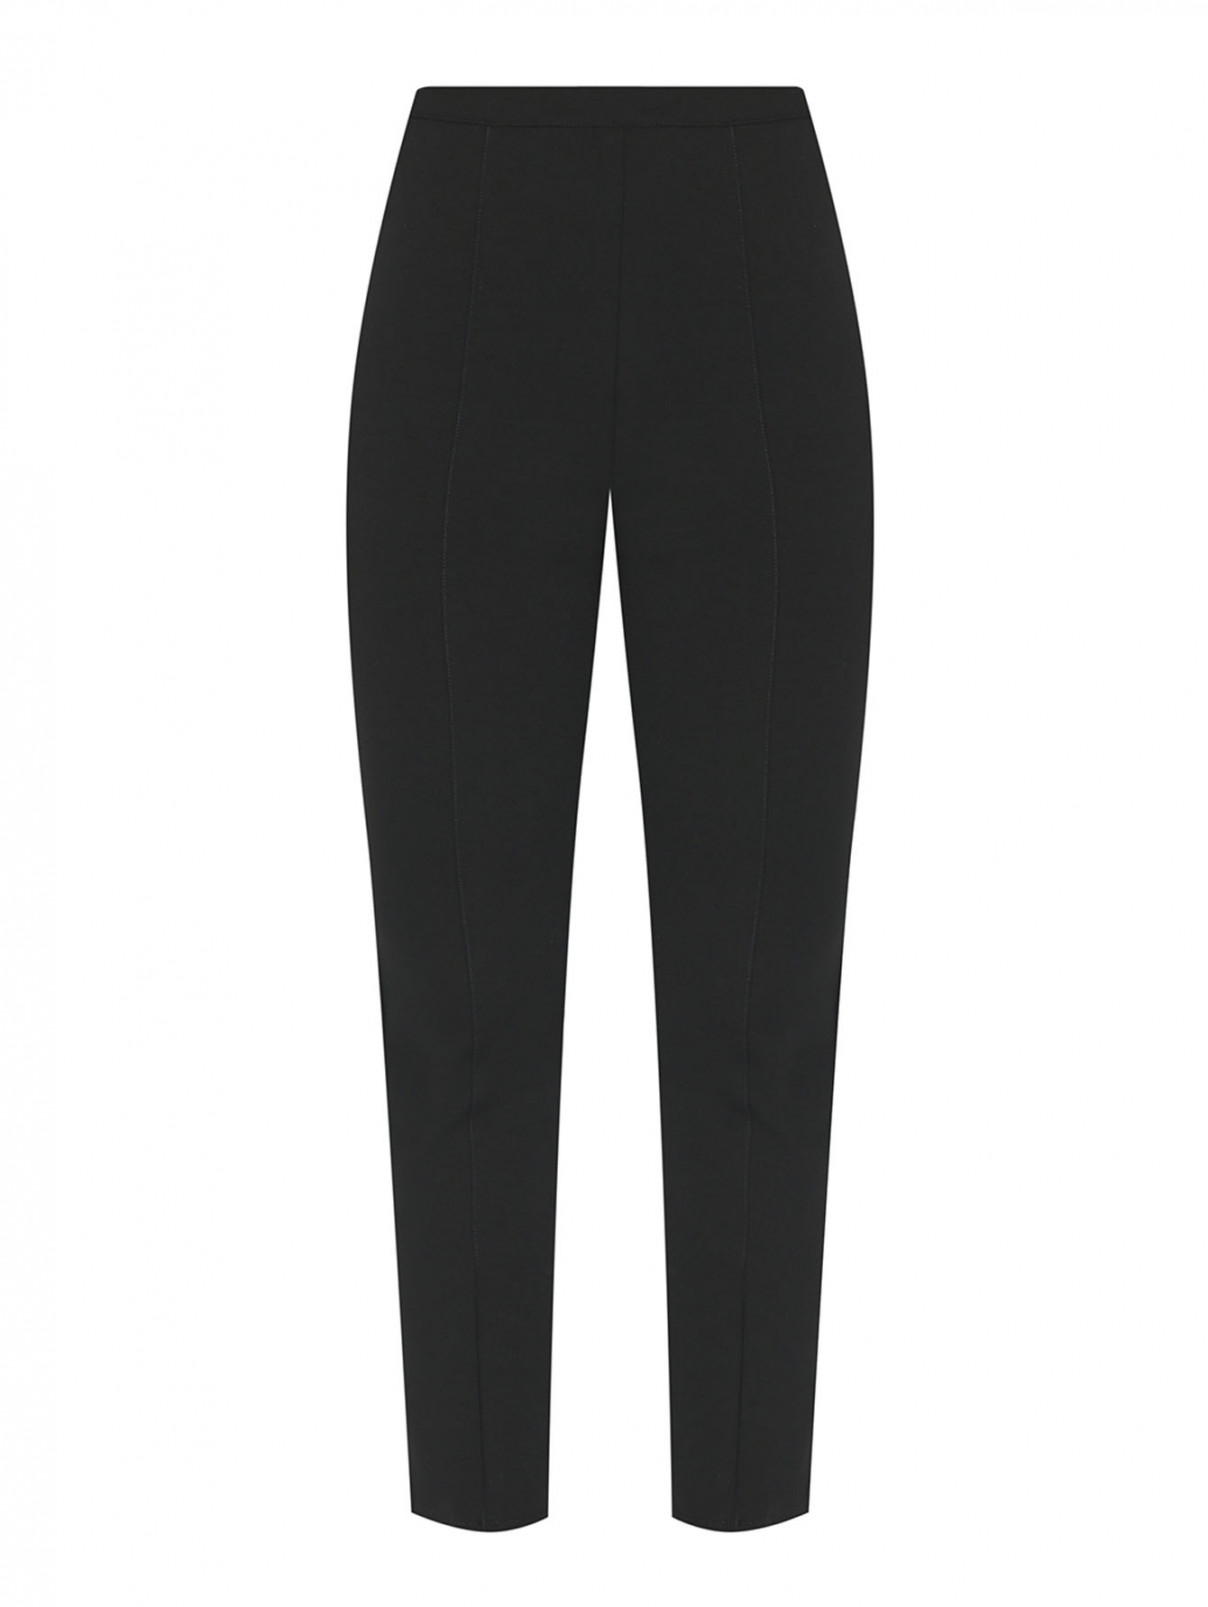 Трикотажные брюки на резинке с разрезами Marina Rinaldi  –  Общий вид  – Цвет:  Черный